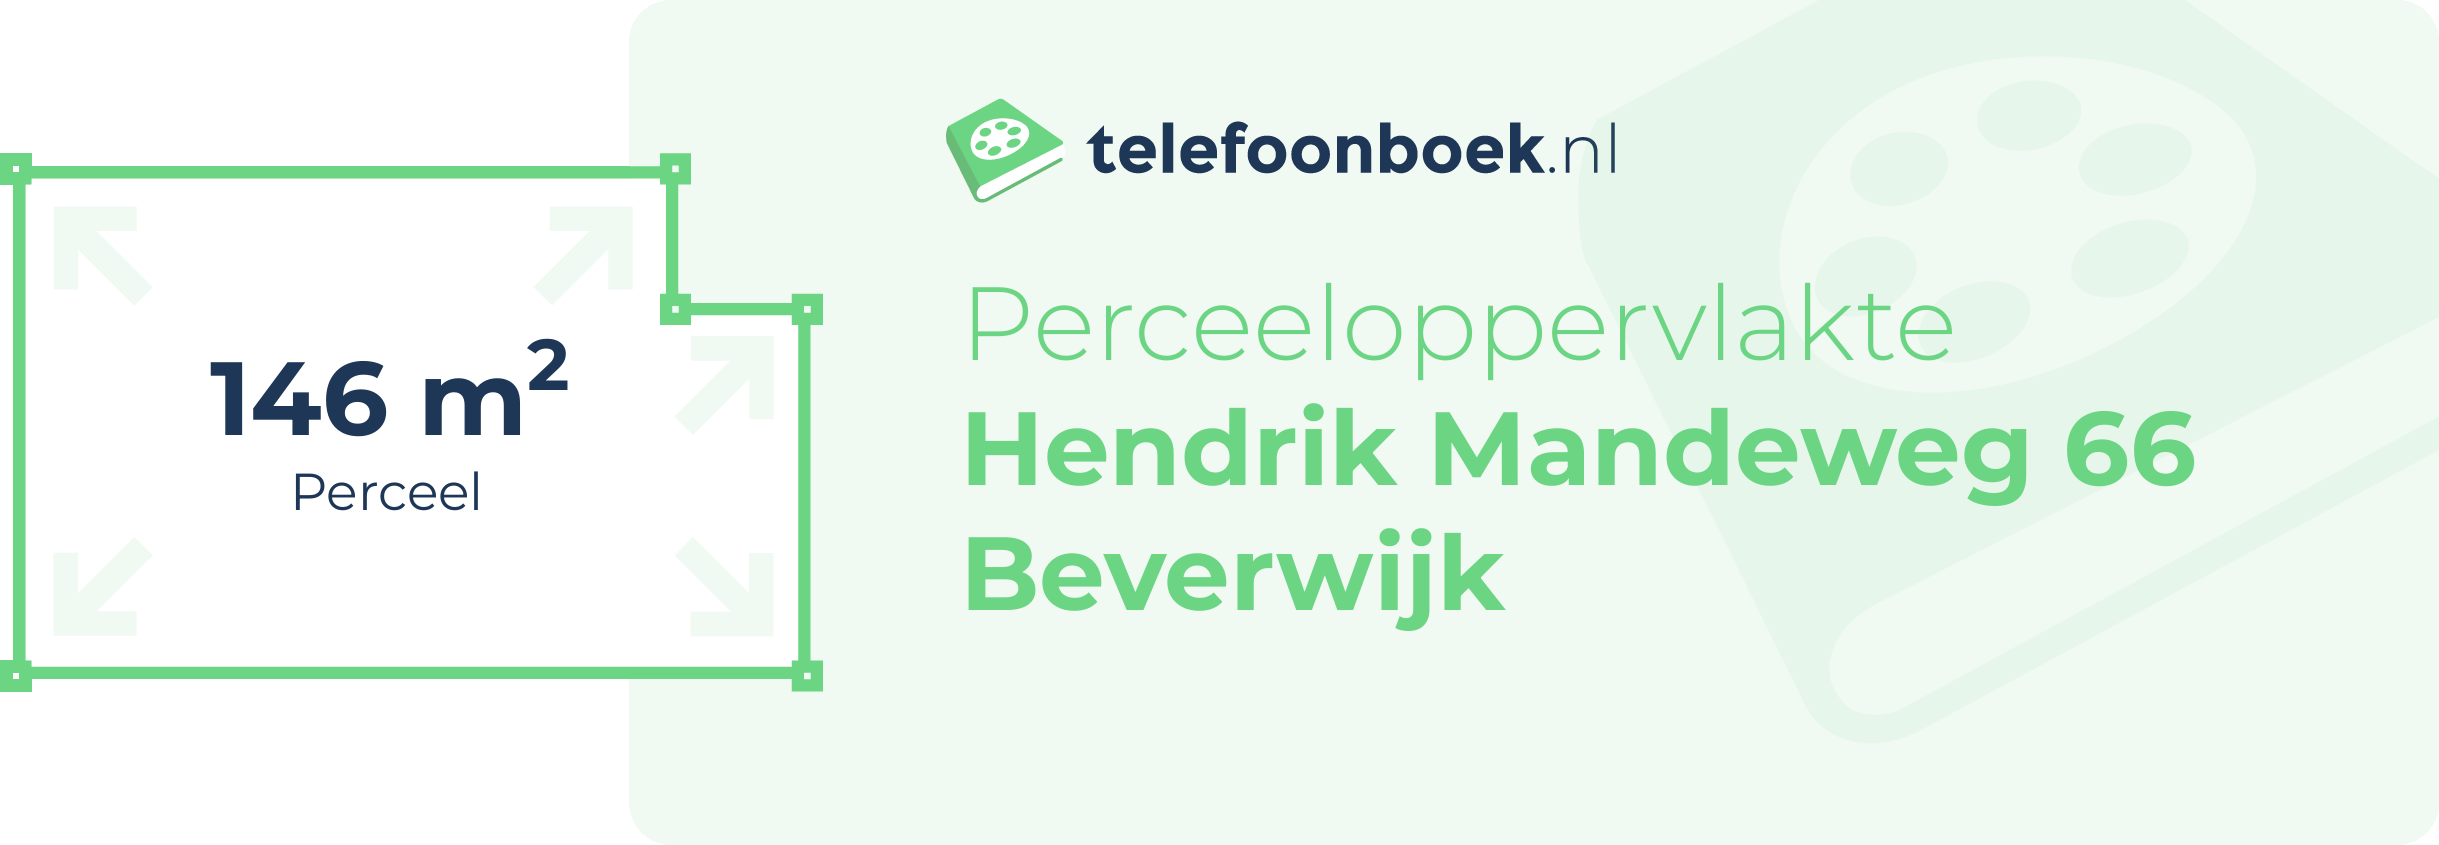 Perceeloppervlakte Hendrik Mandeweg 66 Beverwijk